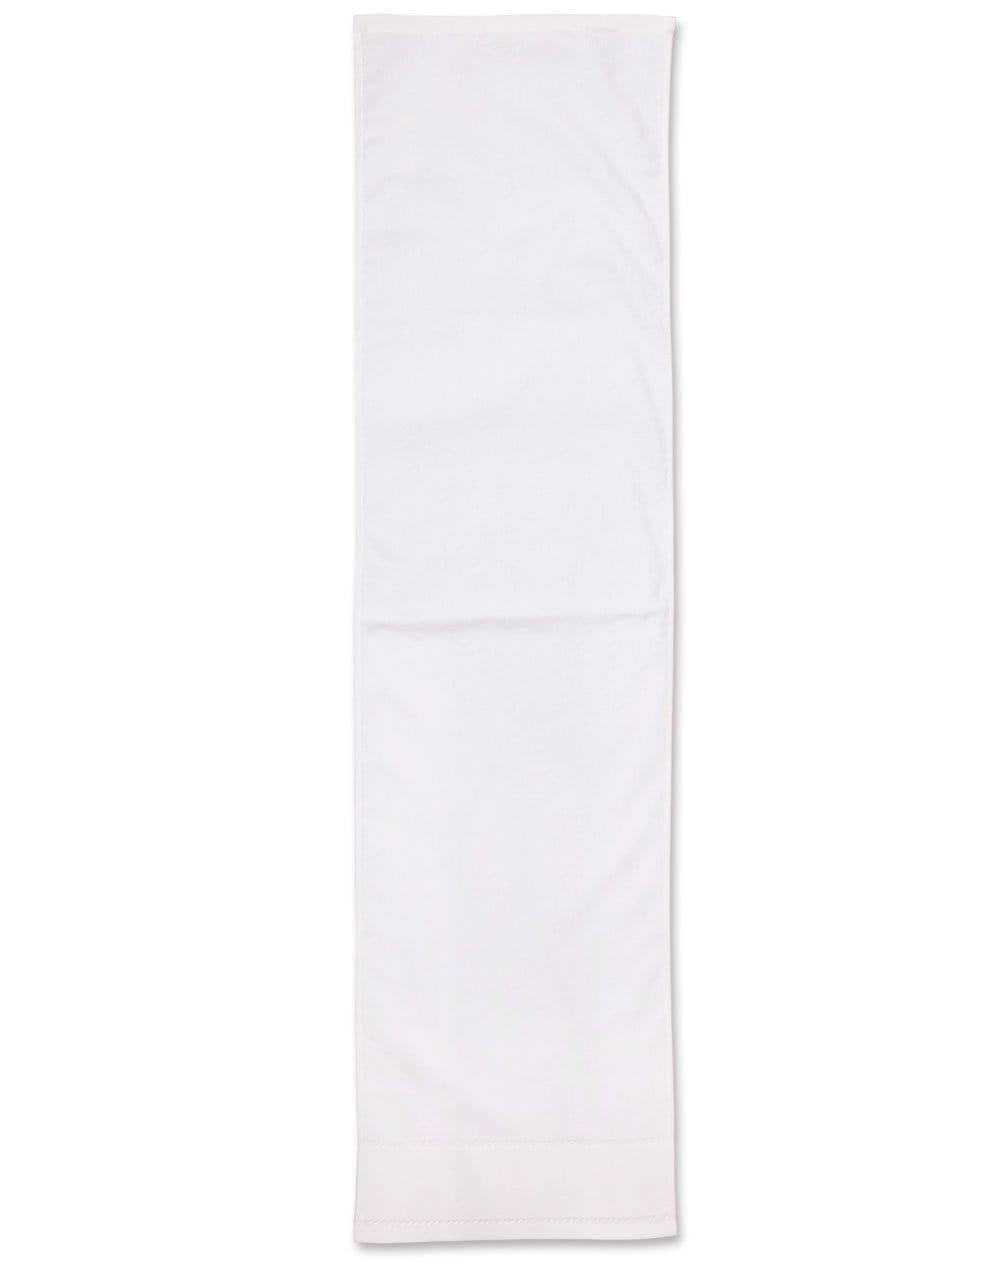 Australian Industrial Wear Work Wear White / 110cm x 30cm FITNESS TOWEL TW05